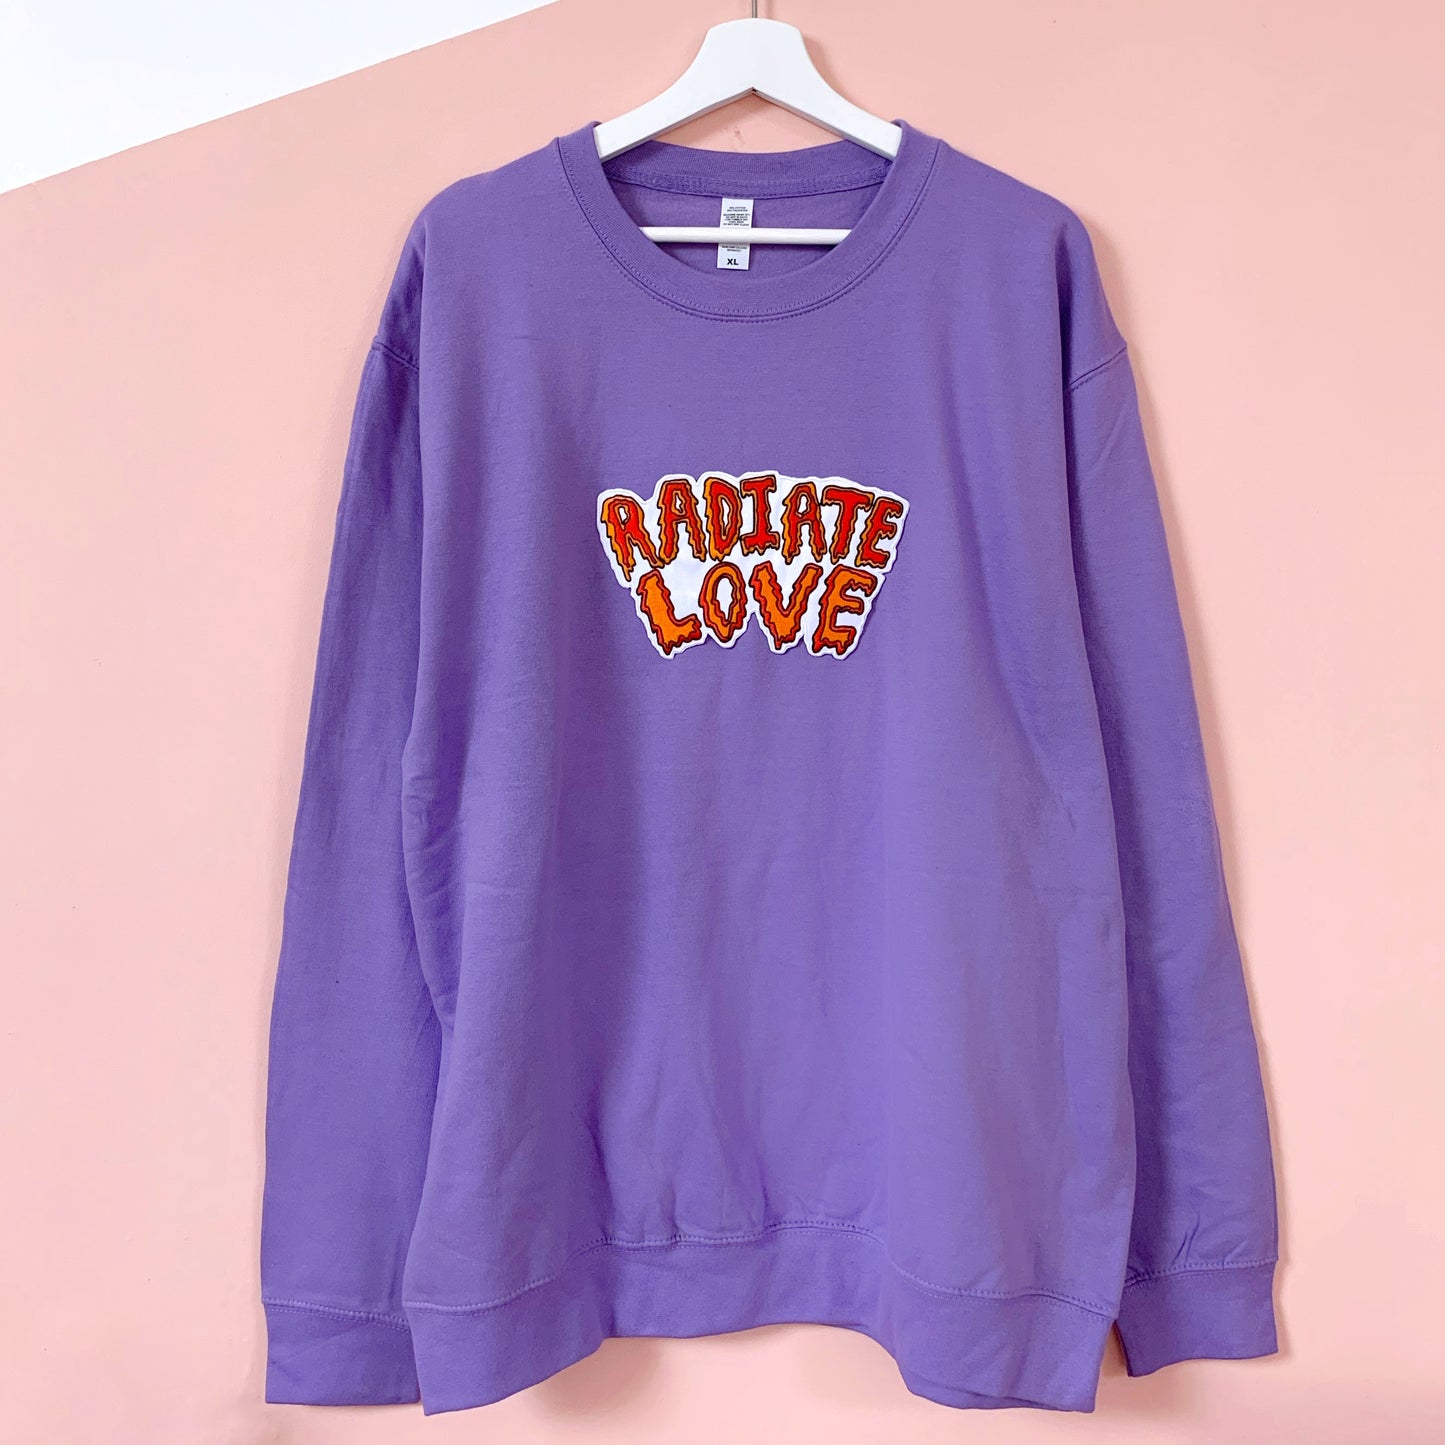 radiate love embroidered sweatshirt - lavender